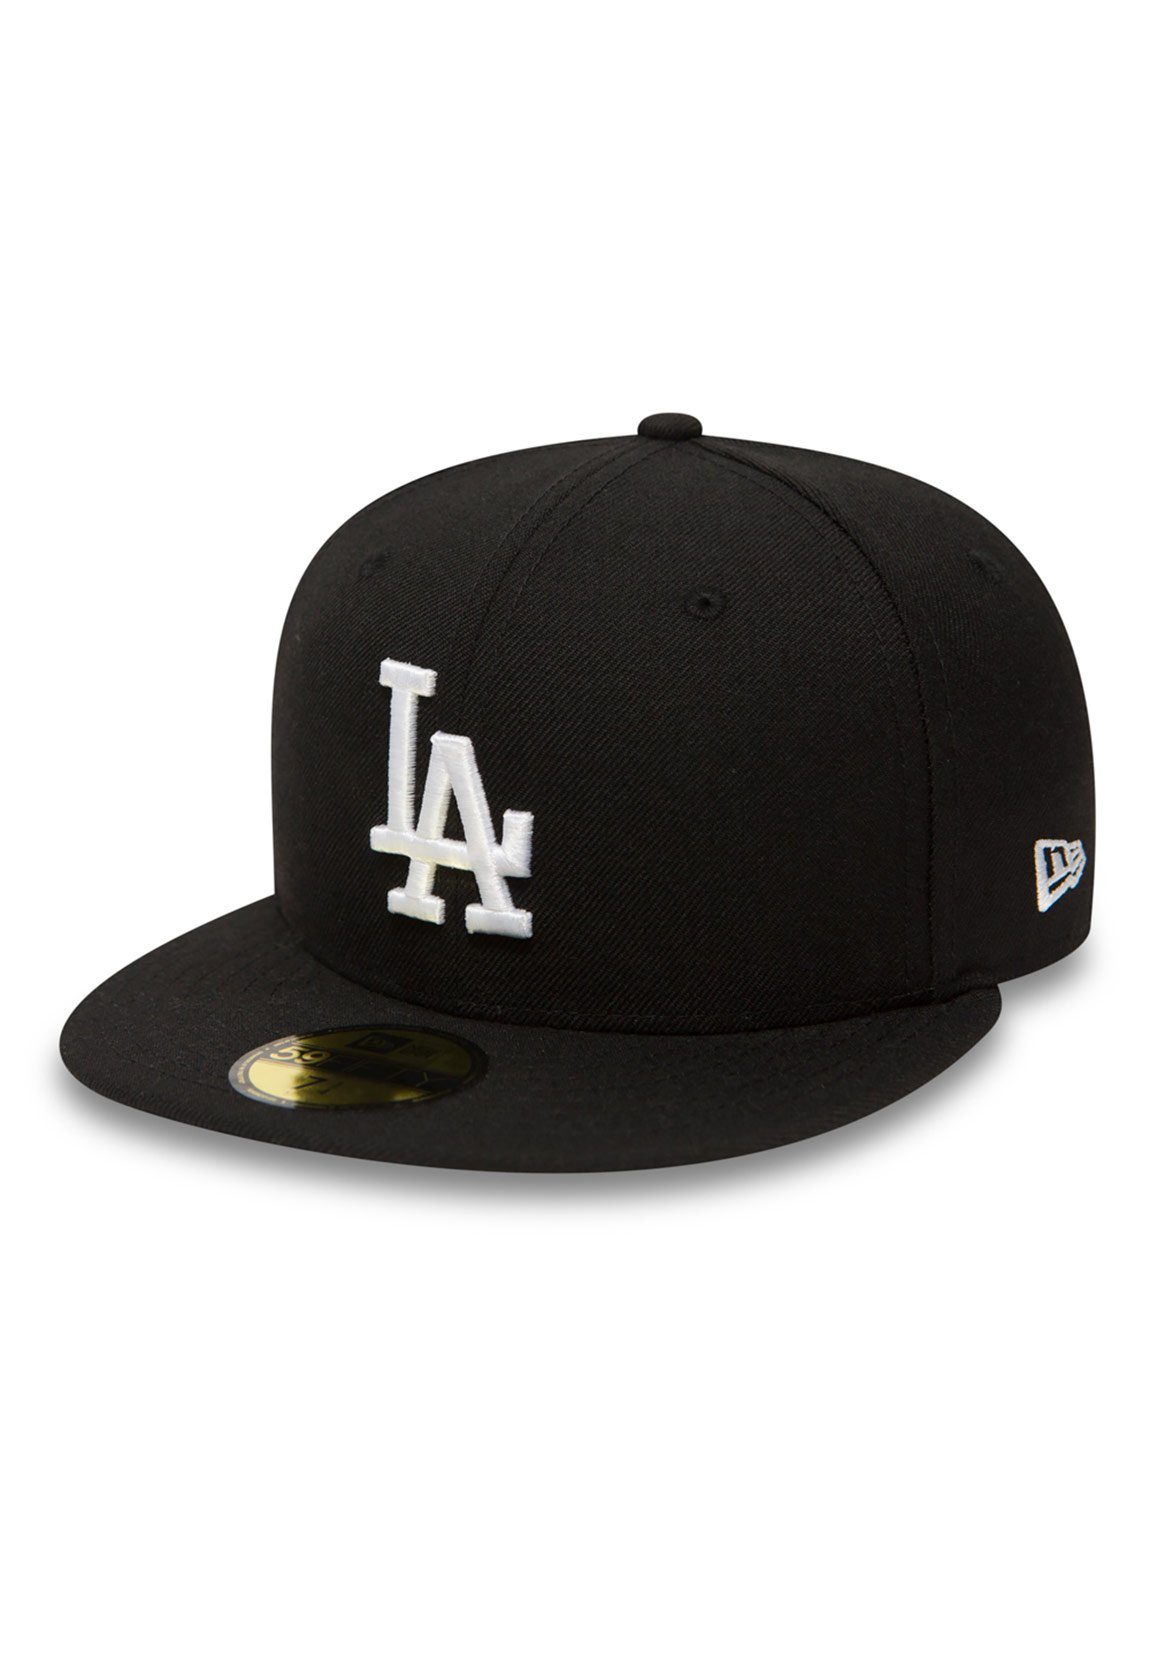 New Era Baseball Cap New Era 59Fiftys Cap - LA DODGERS - Black-White Schwarz/Weiß | Baseball Caps